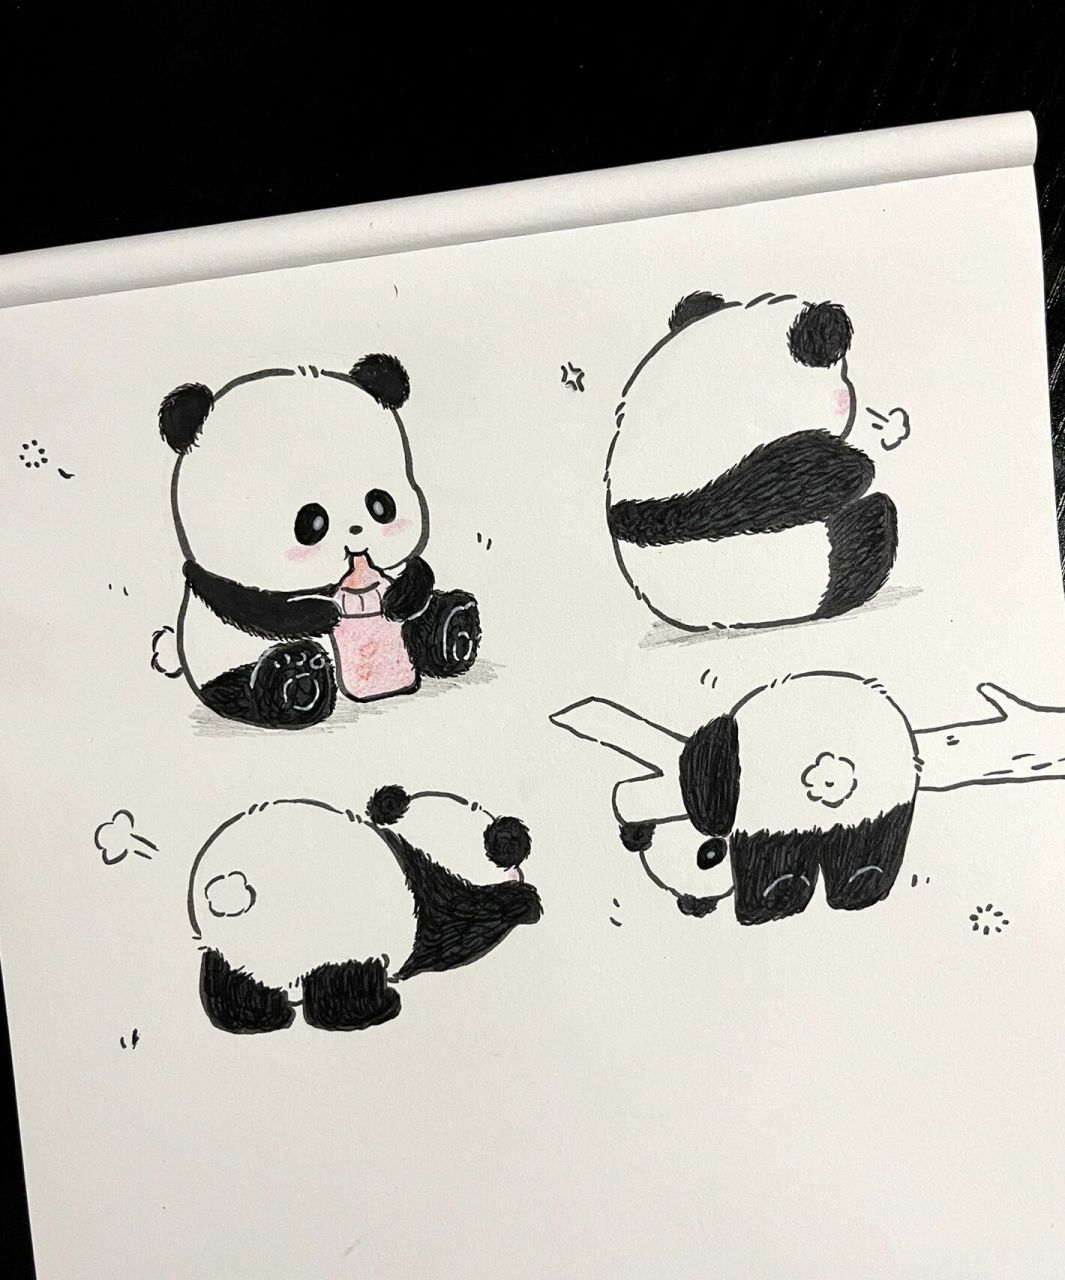 大熊猫简笔画步骤图图片